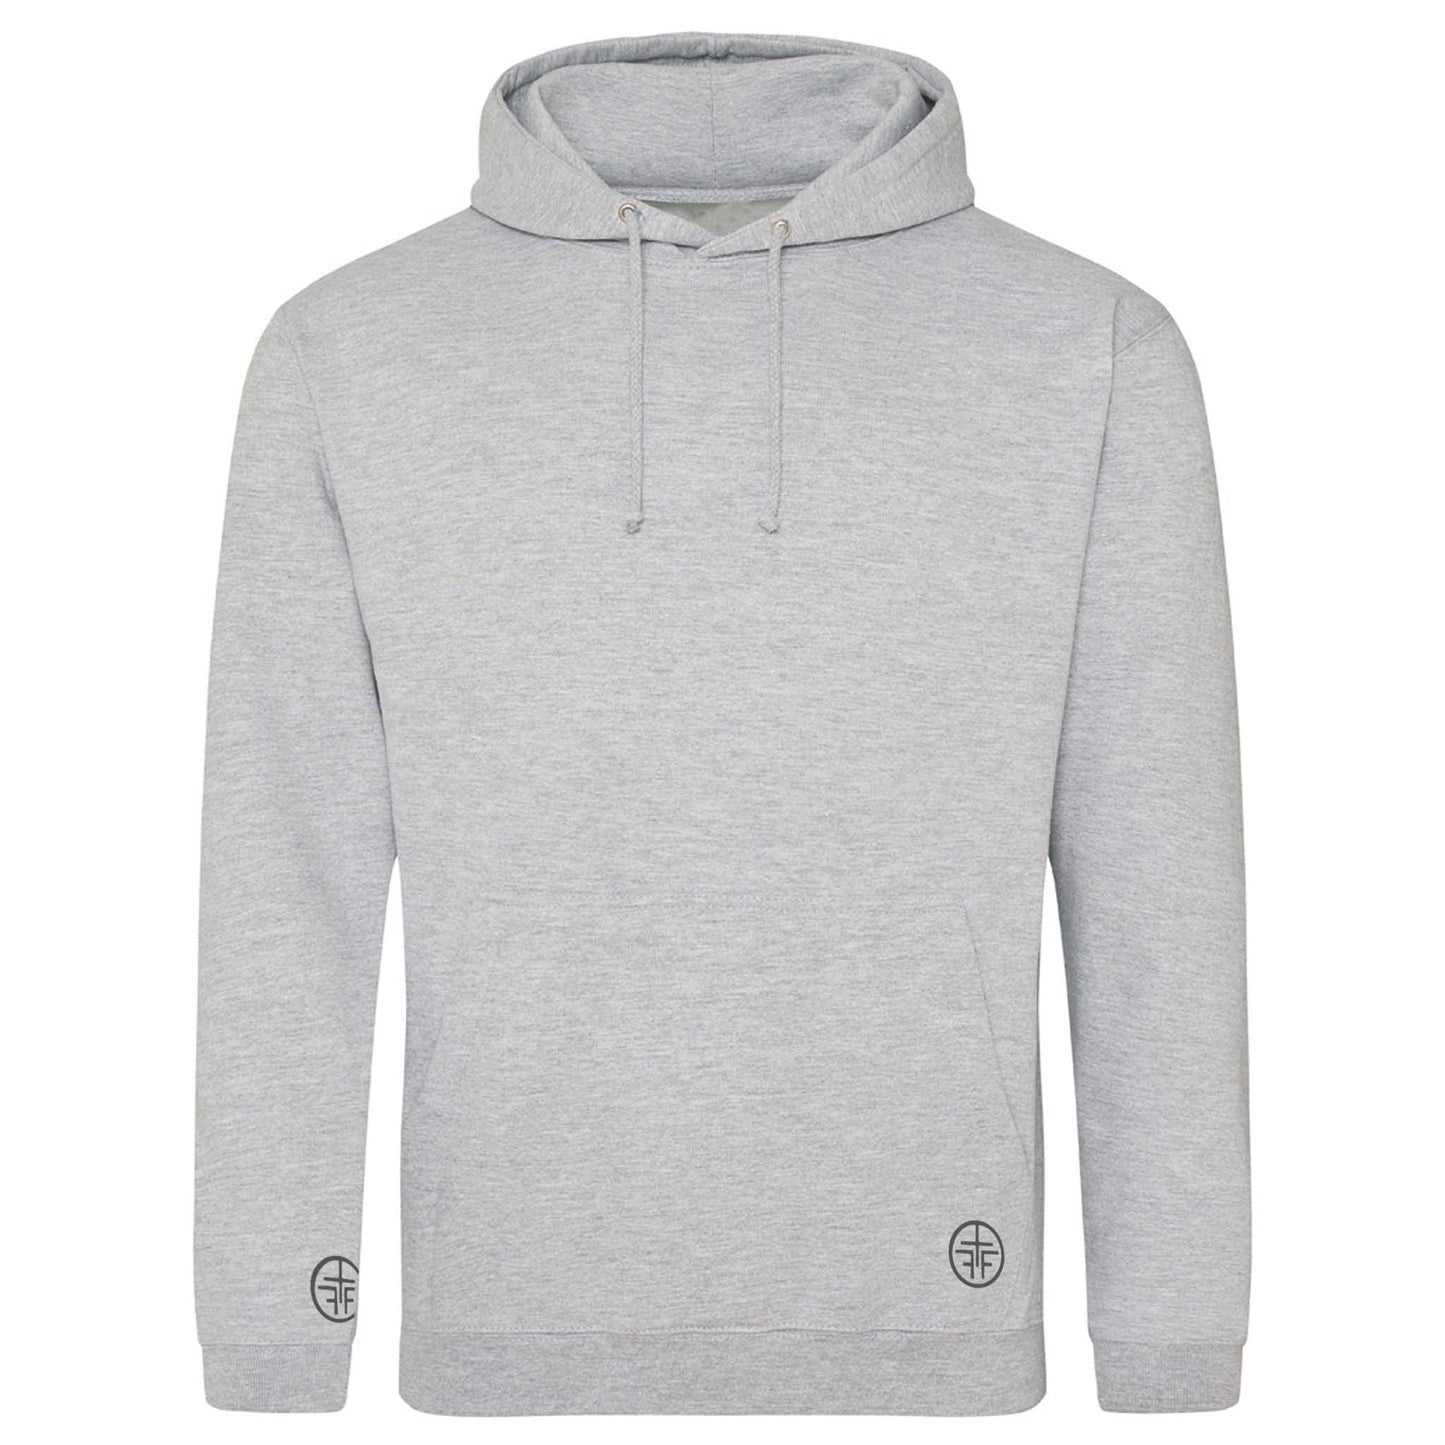 FARA - Hooded Sweater - Grey